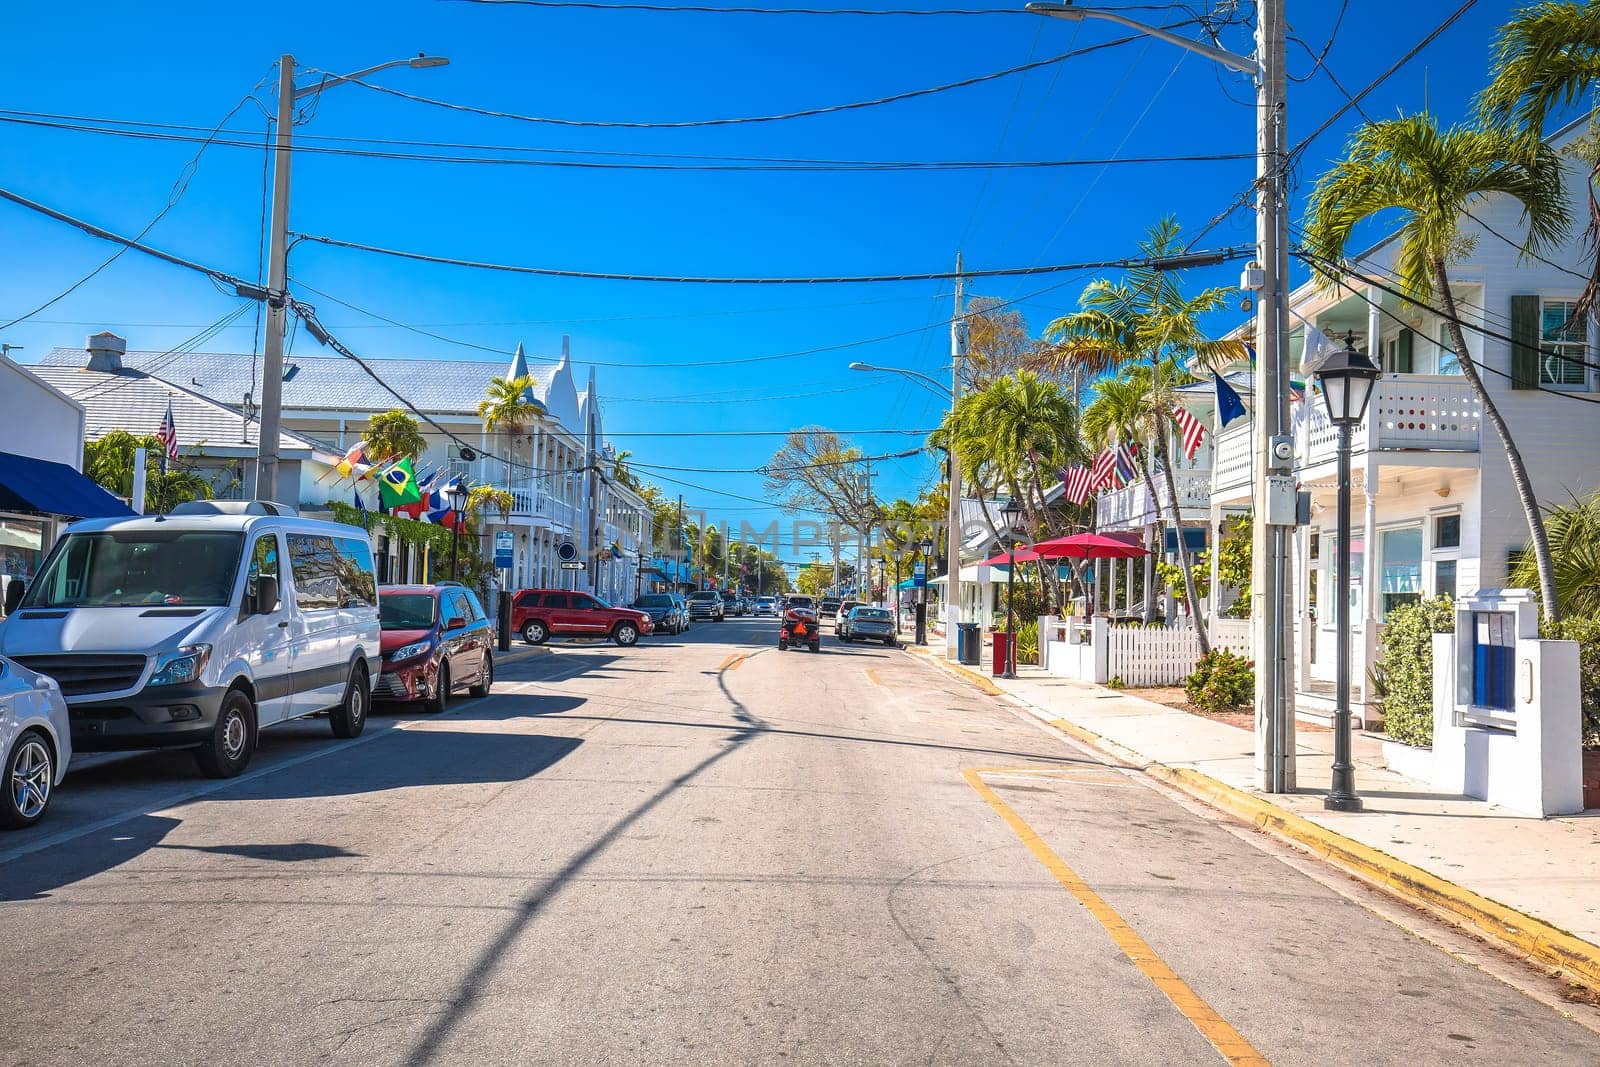 Key West scenic Duval street view, south Florida Keys by xbrchx